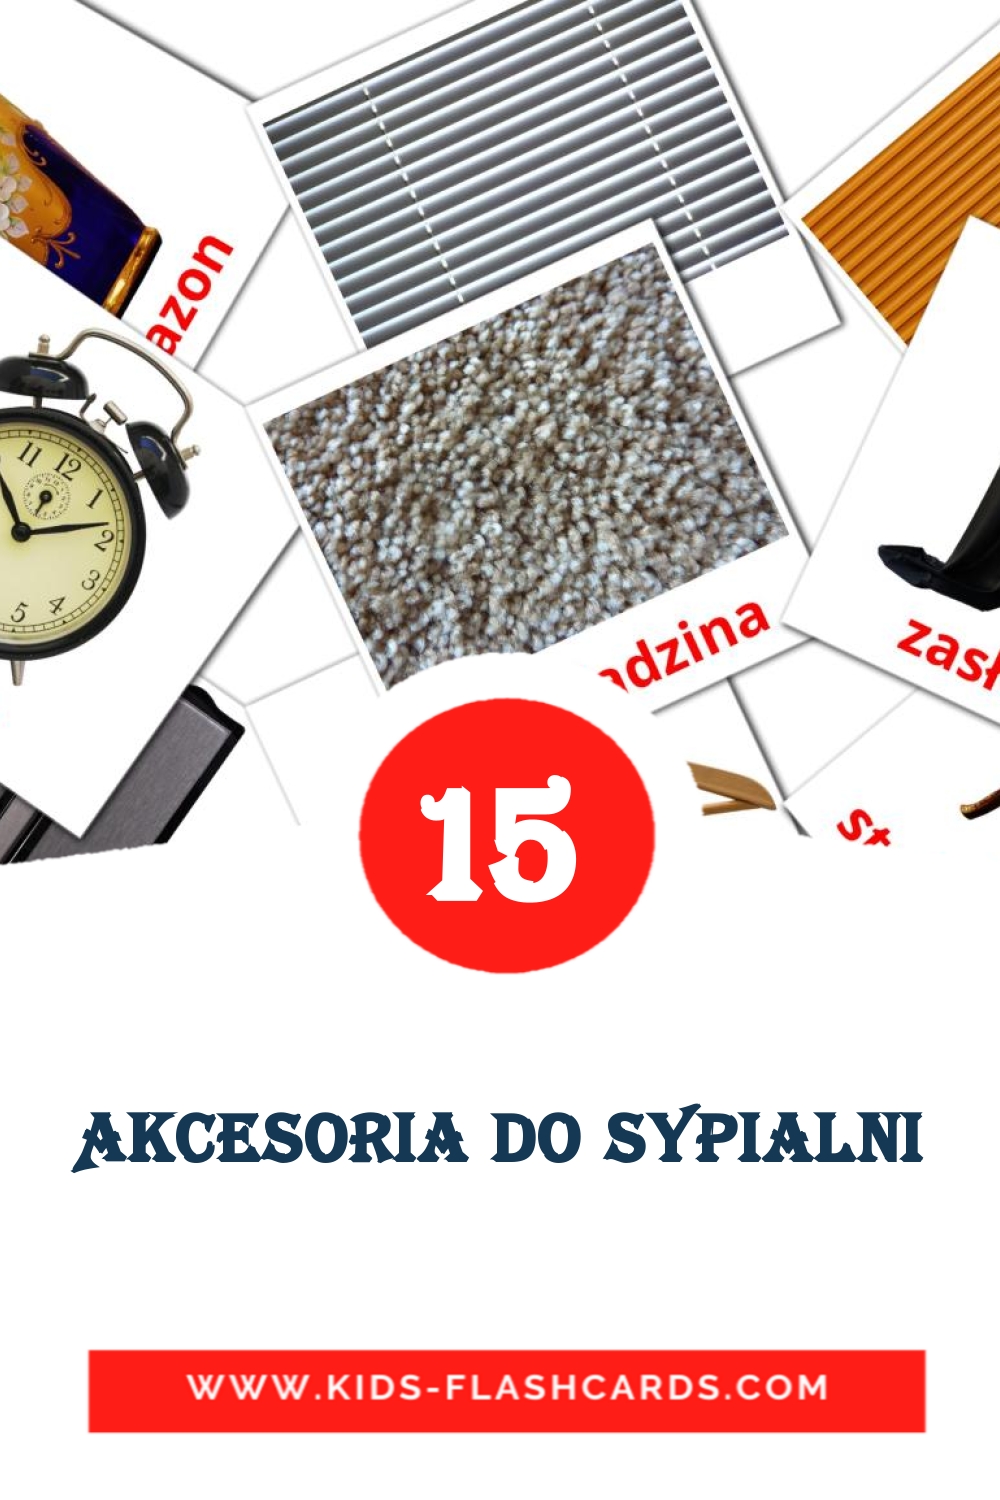 Akcesoria do Sypialni на польском для Детского Сада (15 карточек)